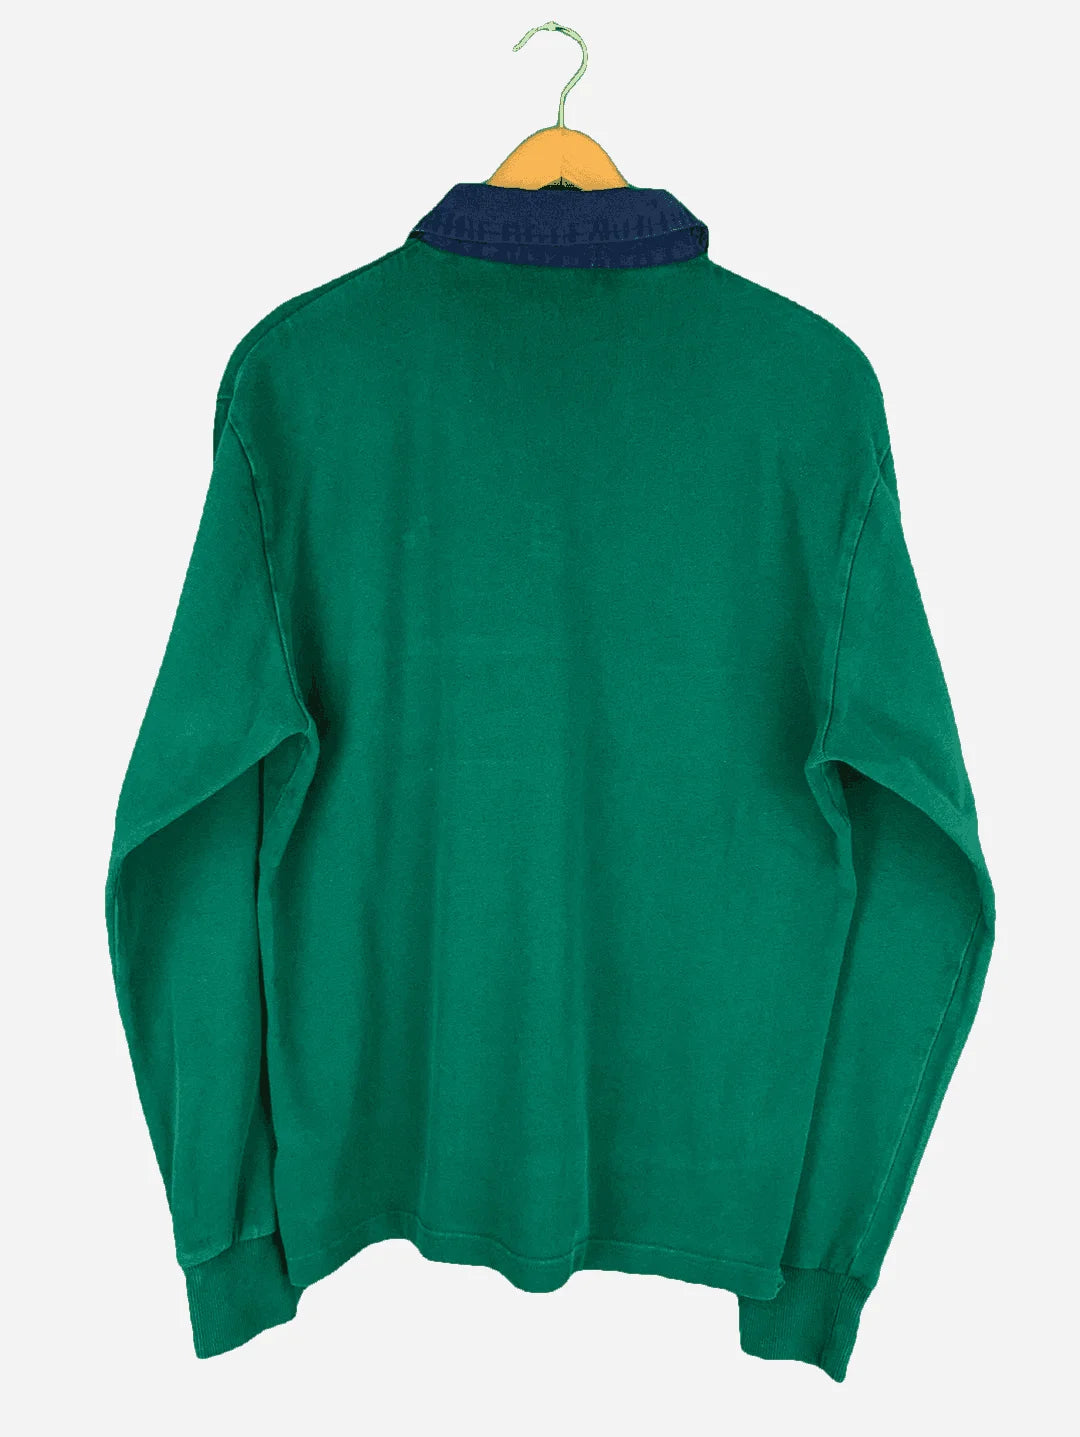 Gant Knopf Sweater (L)